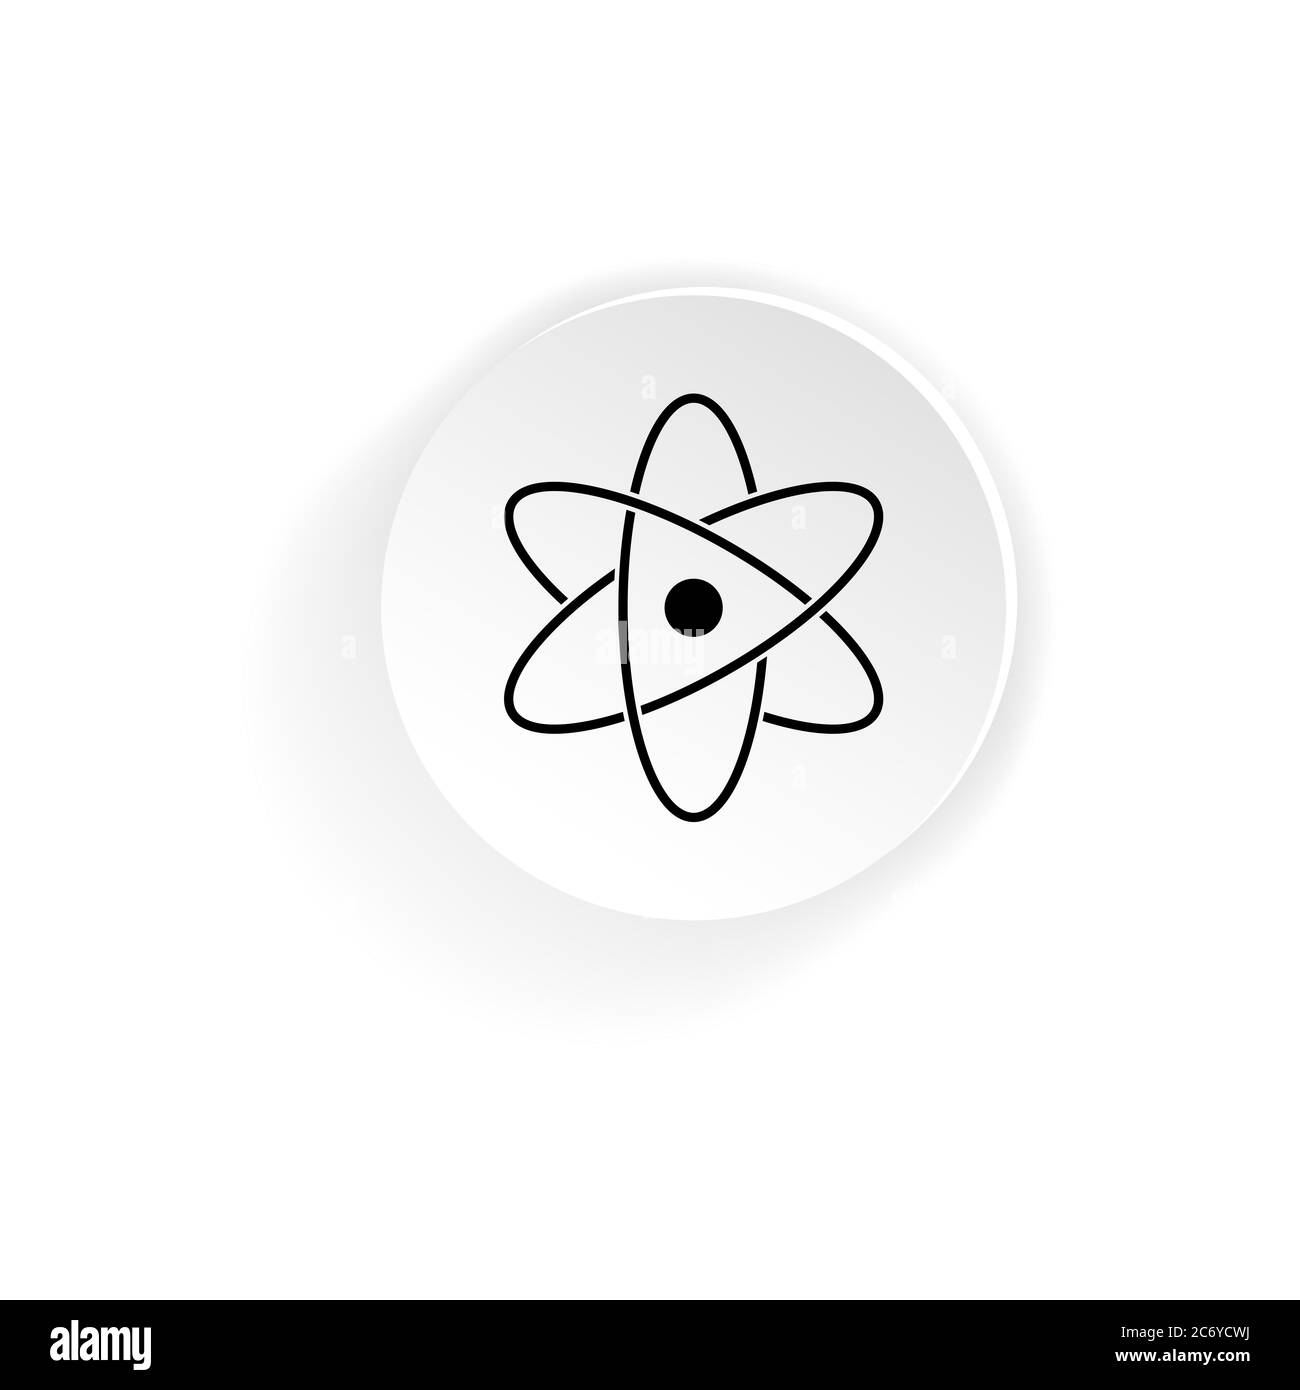 Neutronen-Symbol für molekulare Atome. Vektor auf isoliertem weißem Hintergrund. EPS 10 Stock Vektor